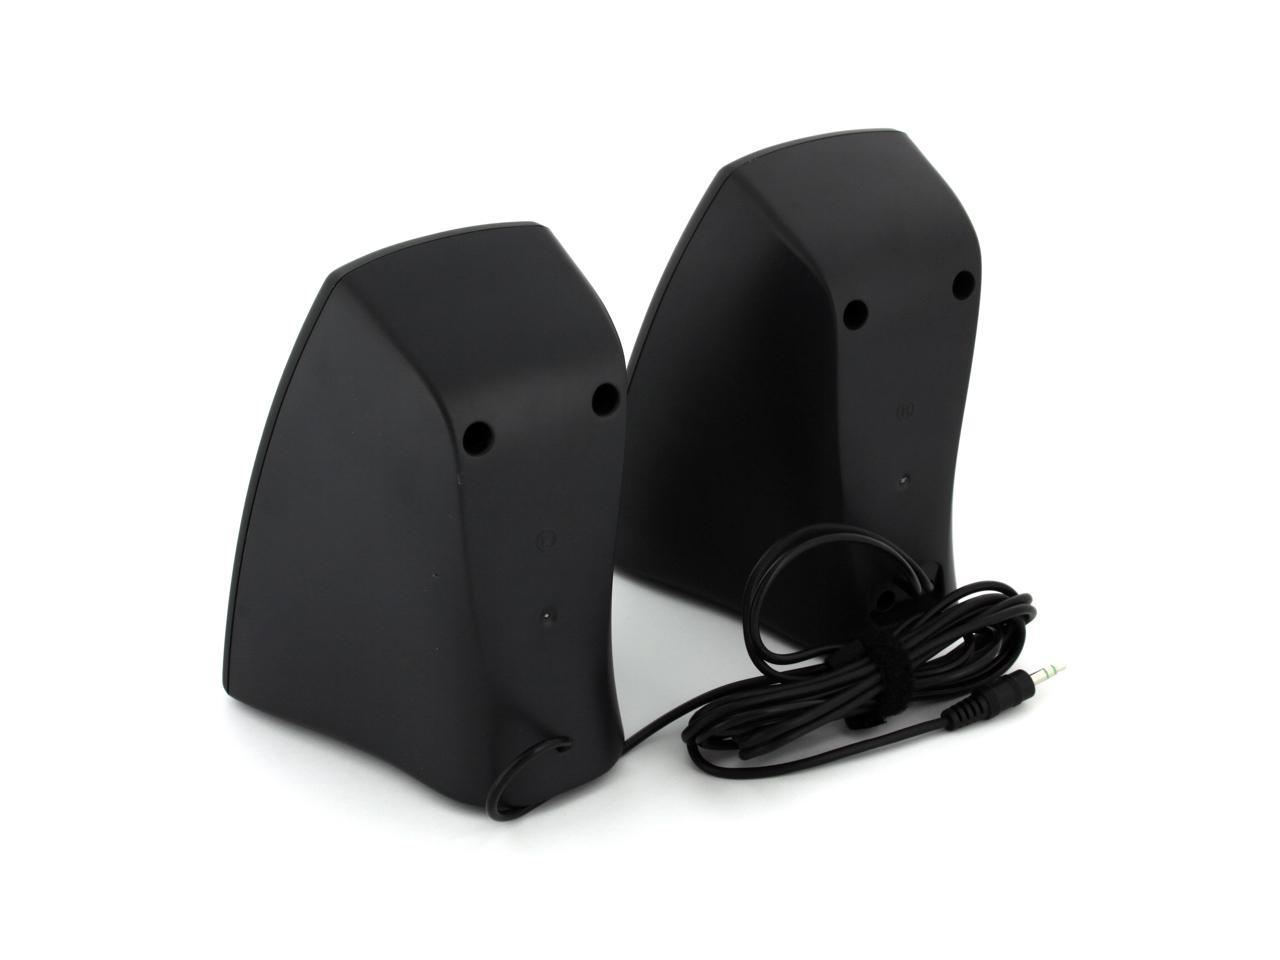 Logitech Z130 2 0 Speakers 980 Black Newegg Com